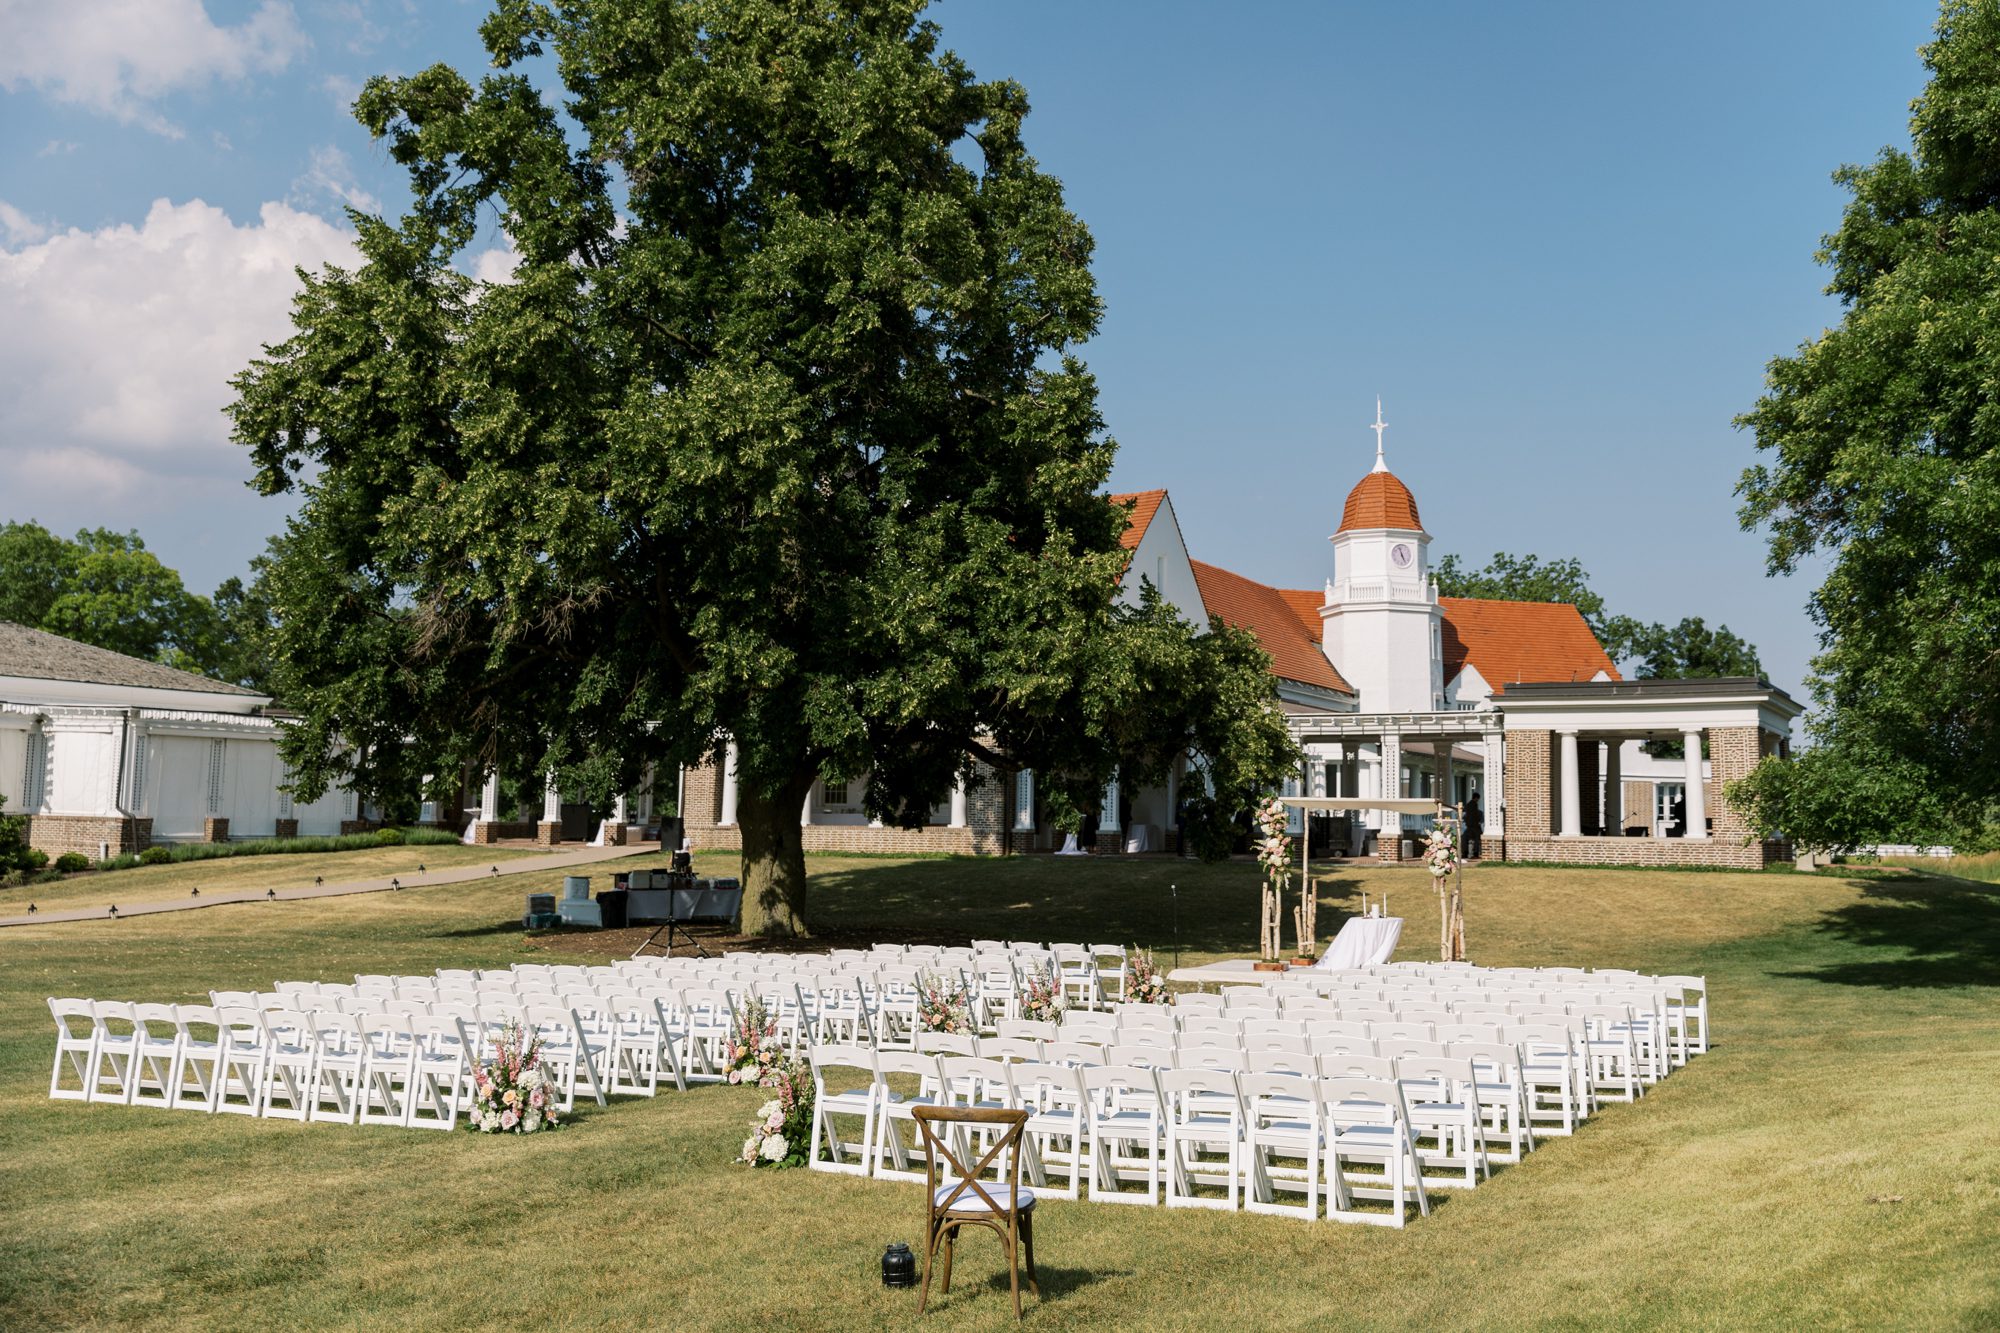 Outdoor ceremony setup for the Chicago Golf Club wedding